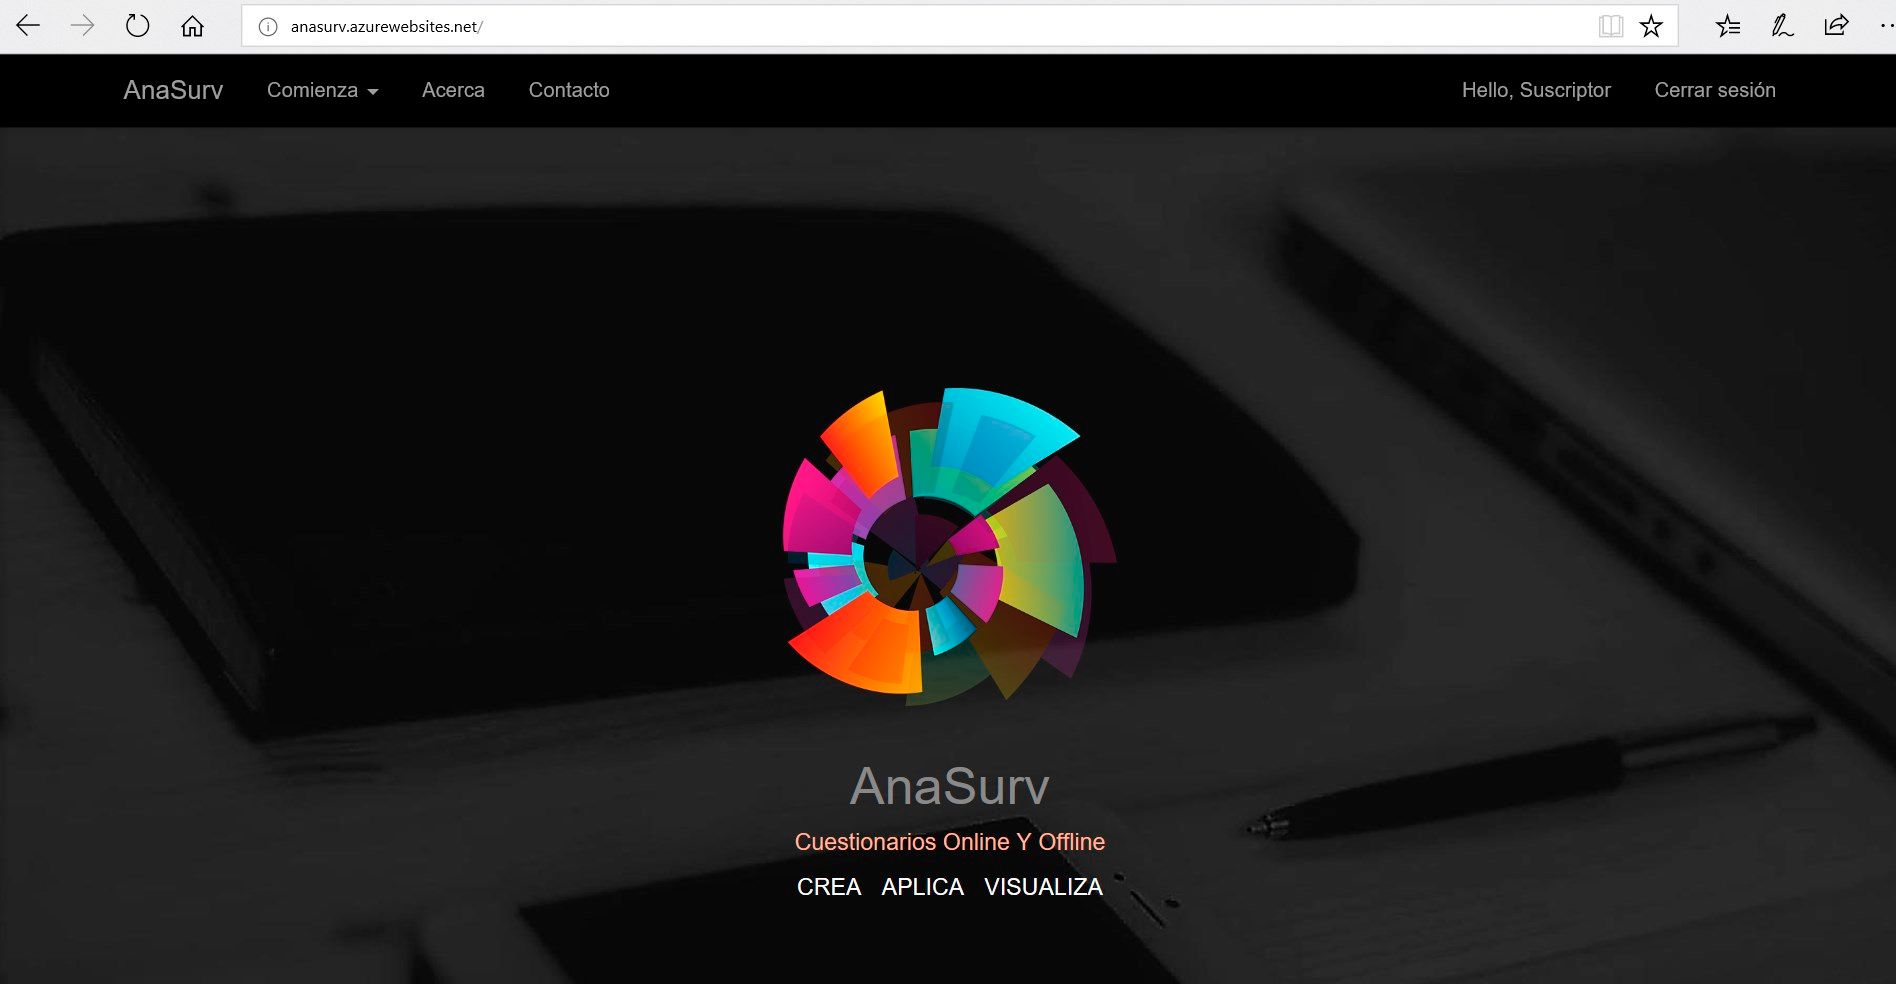 Sitio web de Anasurv, crea, aplica y visualiza tus cuestionarios así como los datos levantados